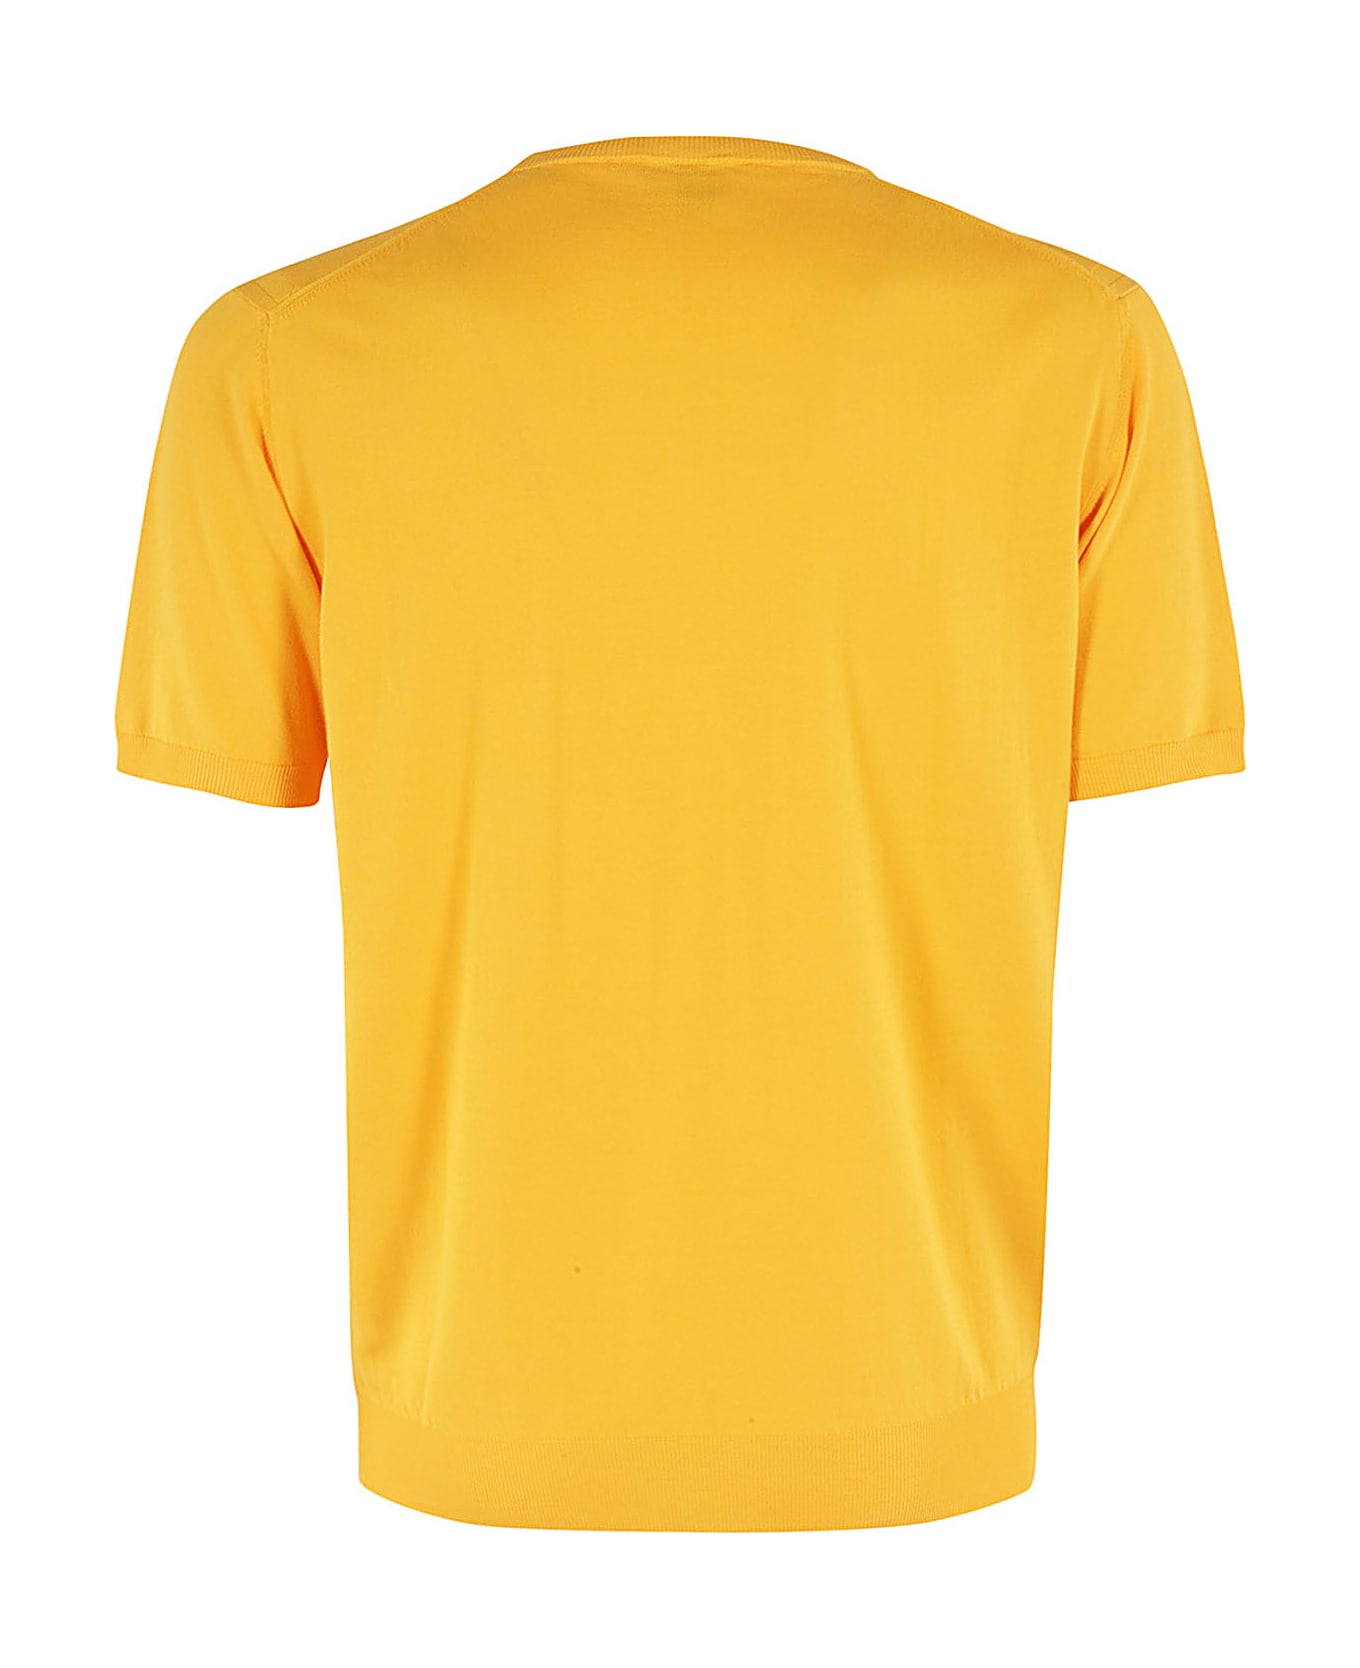 Kangra T Shirt - Zucca